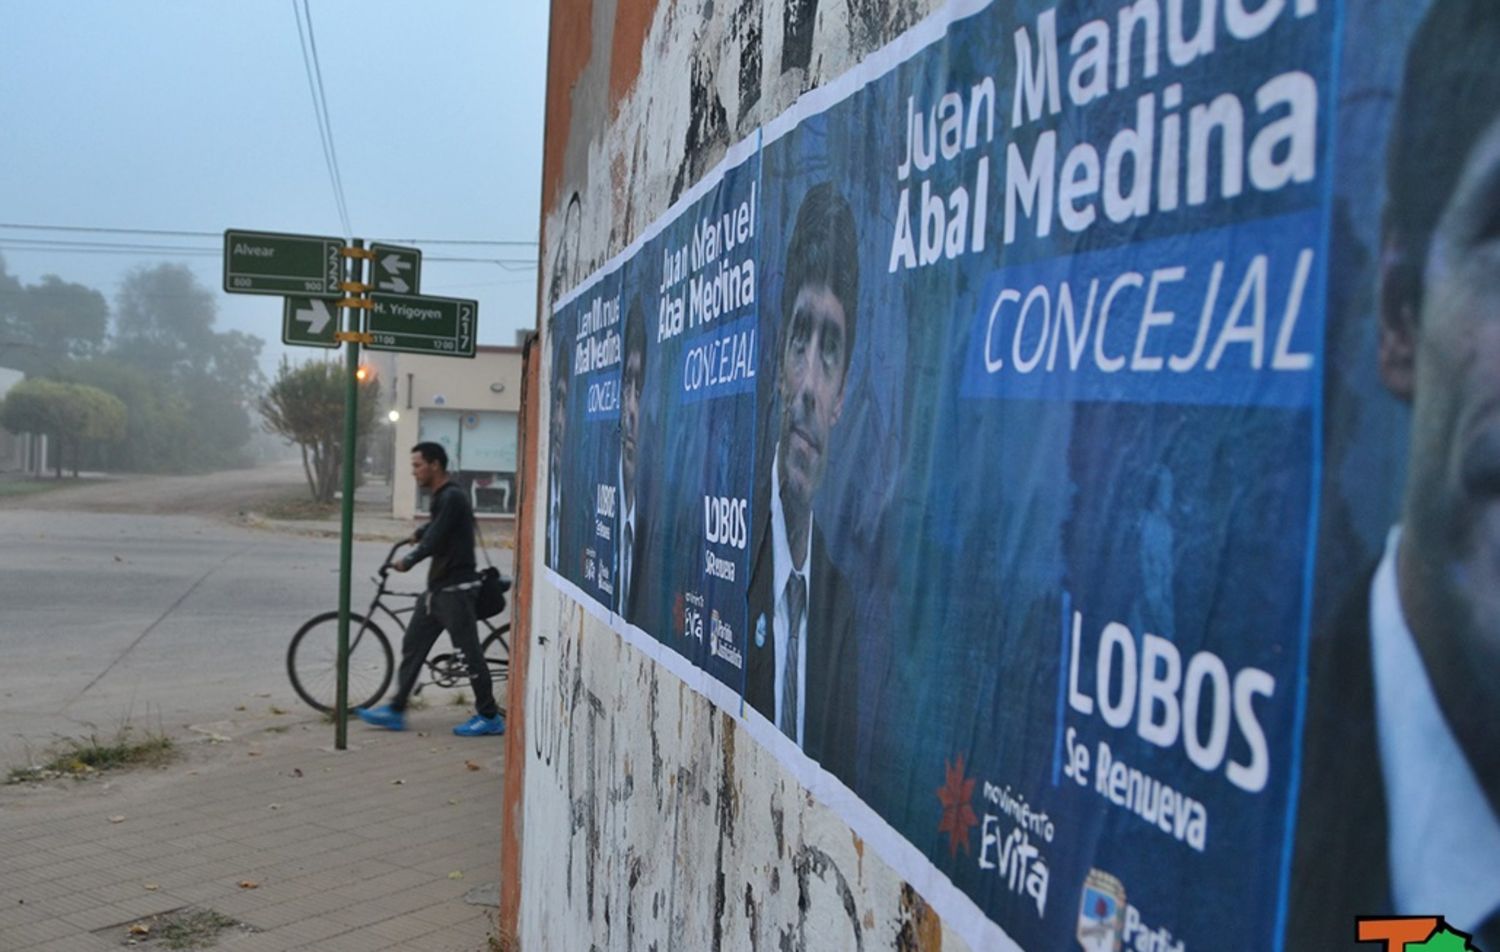 Abal Medina lanzó su candidatura a concejal en Lobos y mostró apoyo a Randazzo